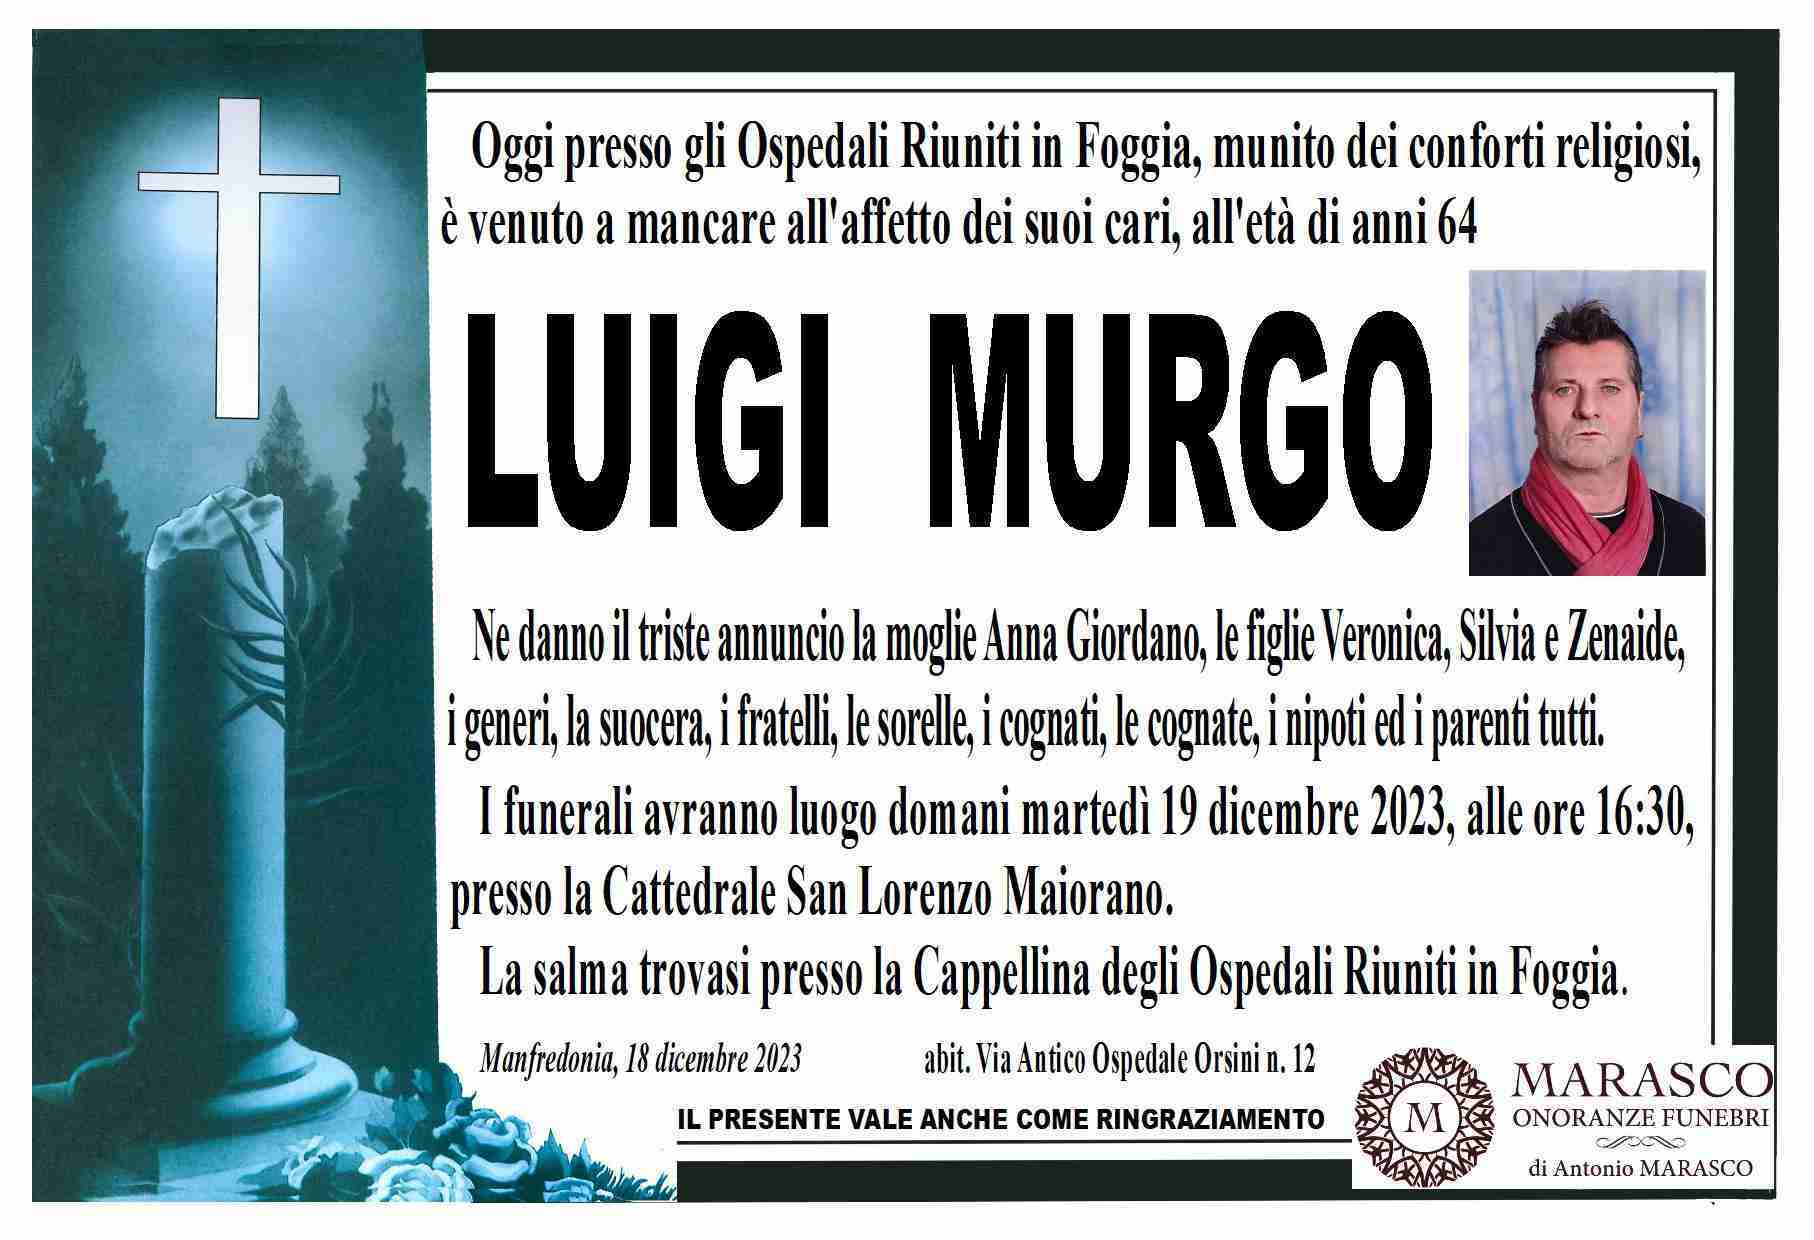 Luigi Murgo